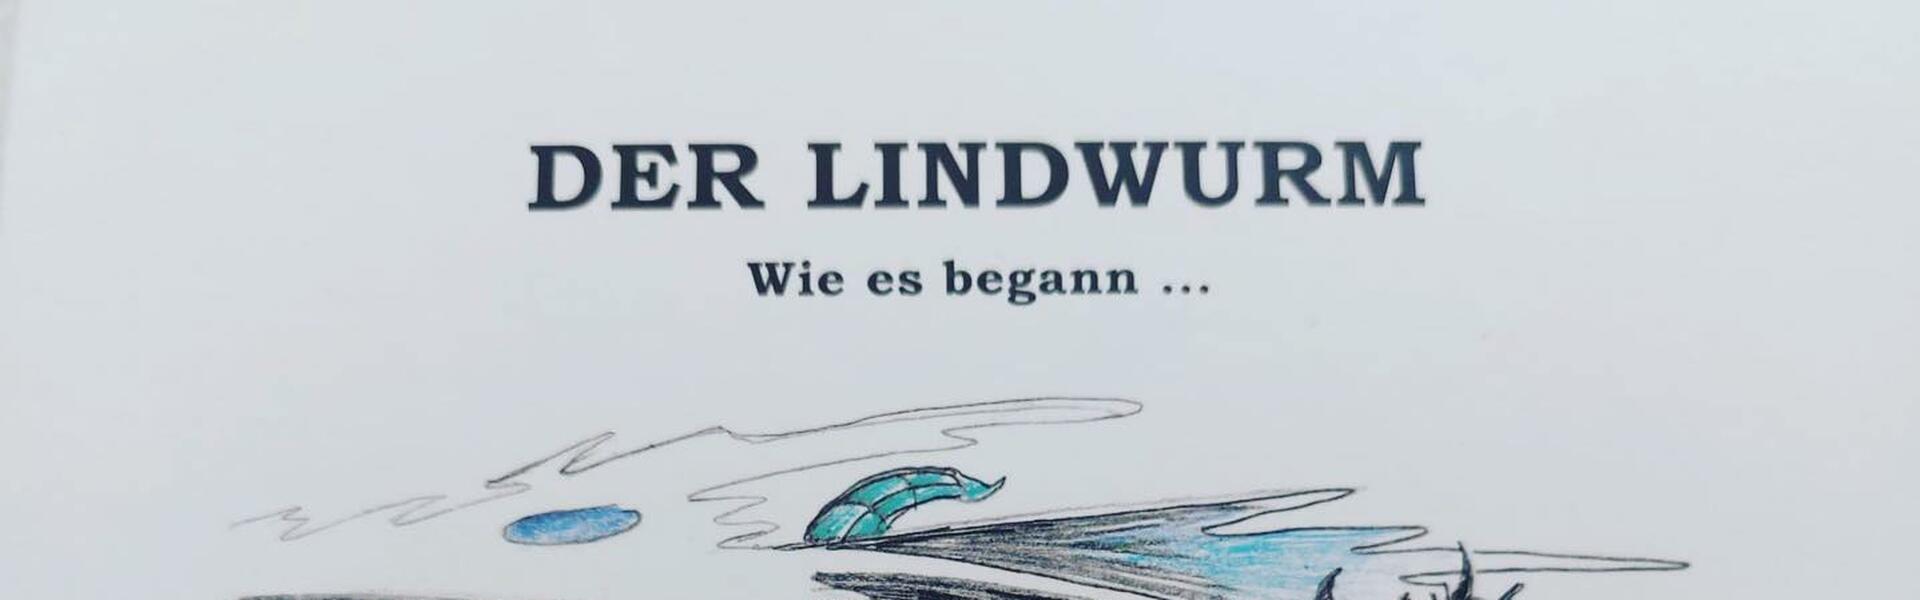 Der Lindwurm - Wie es begann..